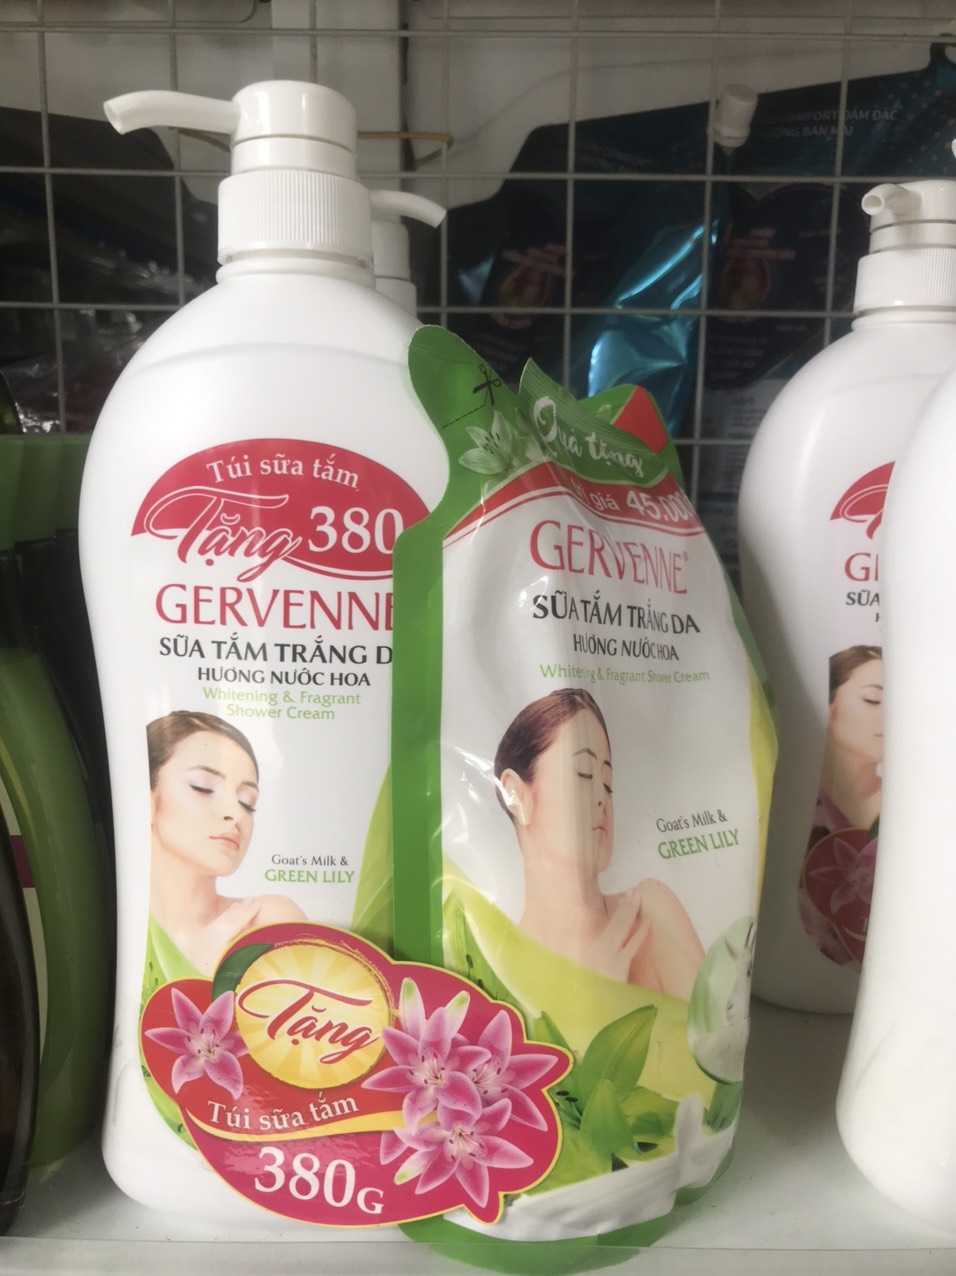 Sữa tắm trắng da hương nước hoa Goast Milk & Green Lily 900g Gervenne (Tặng túi sữa tắm 380g)